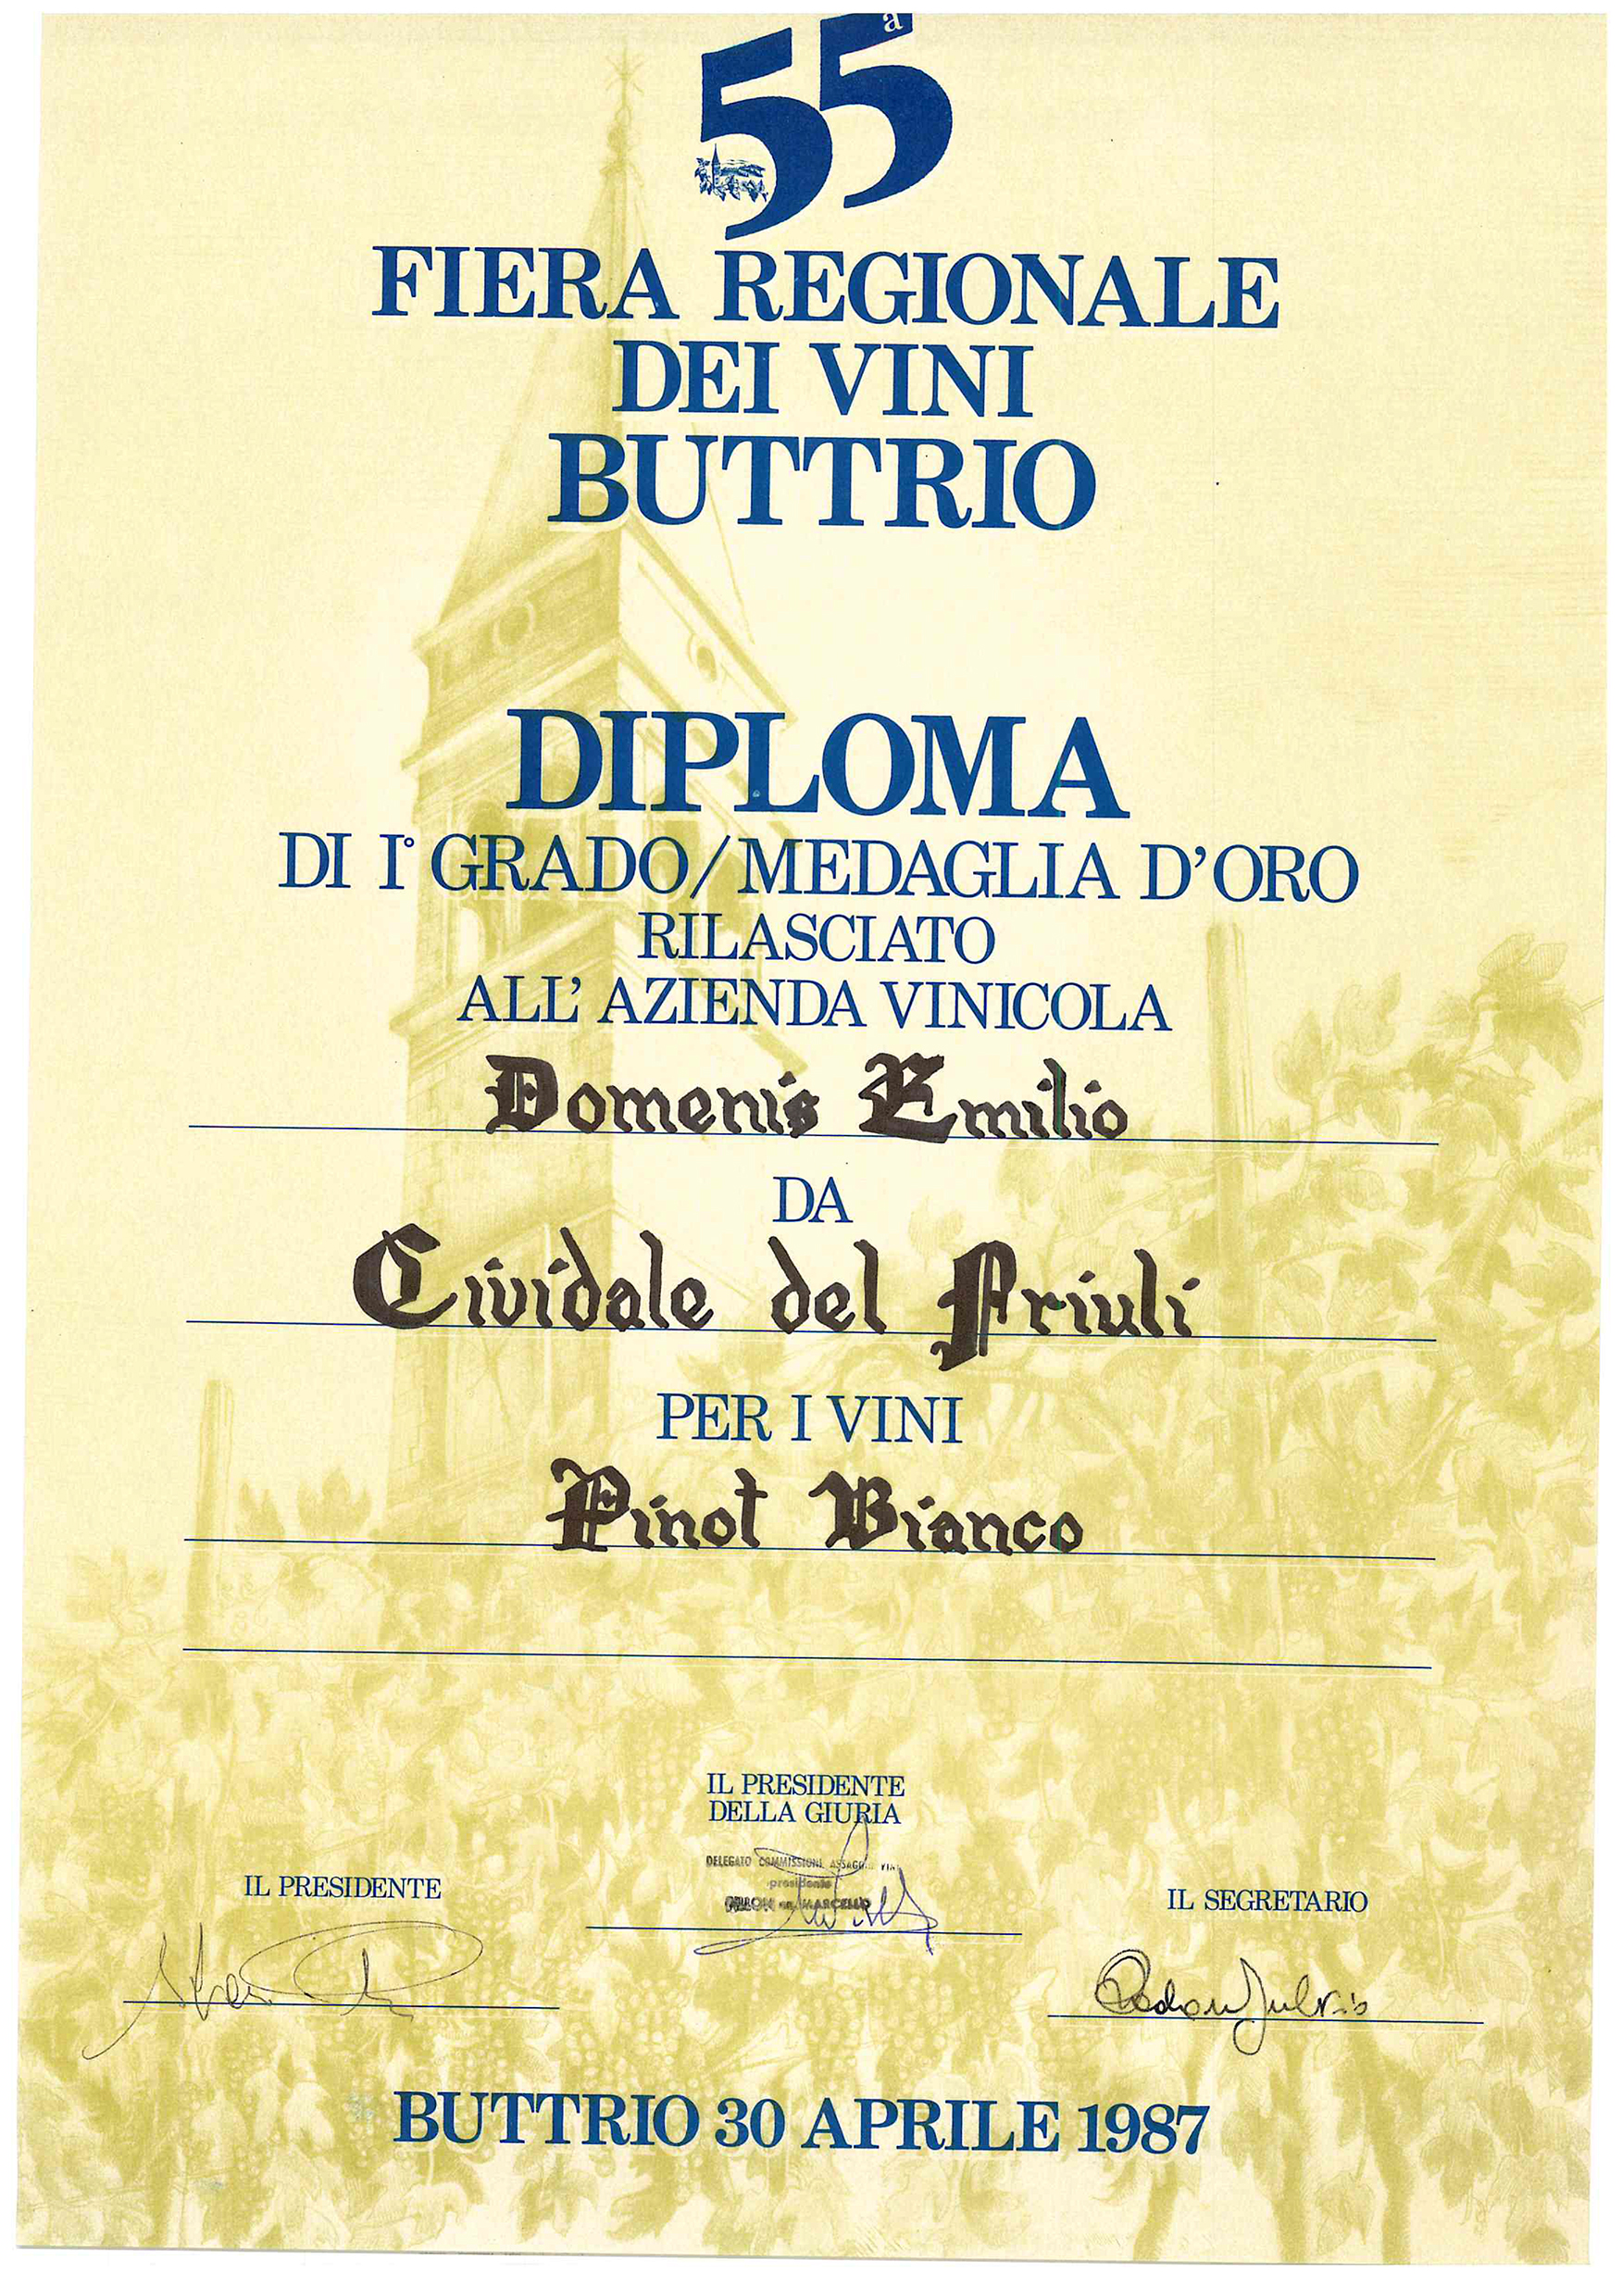 Fiera Regionale dei Vini Buttrio 1987 – Pinot Bianco